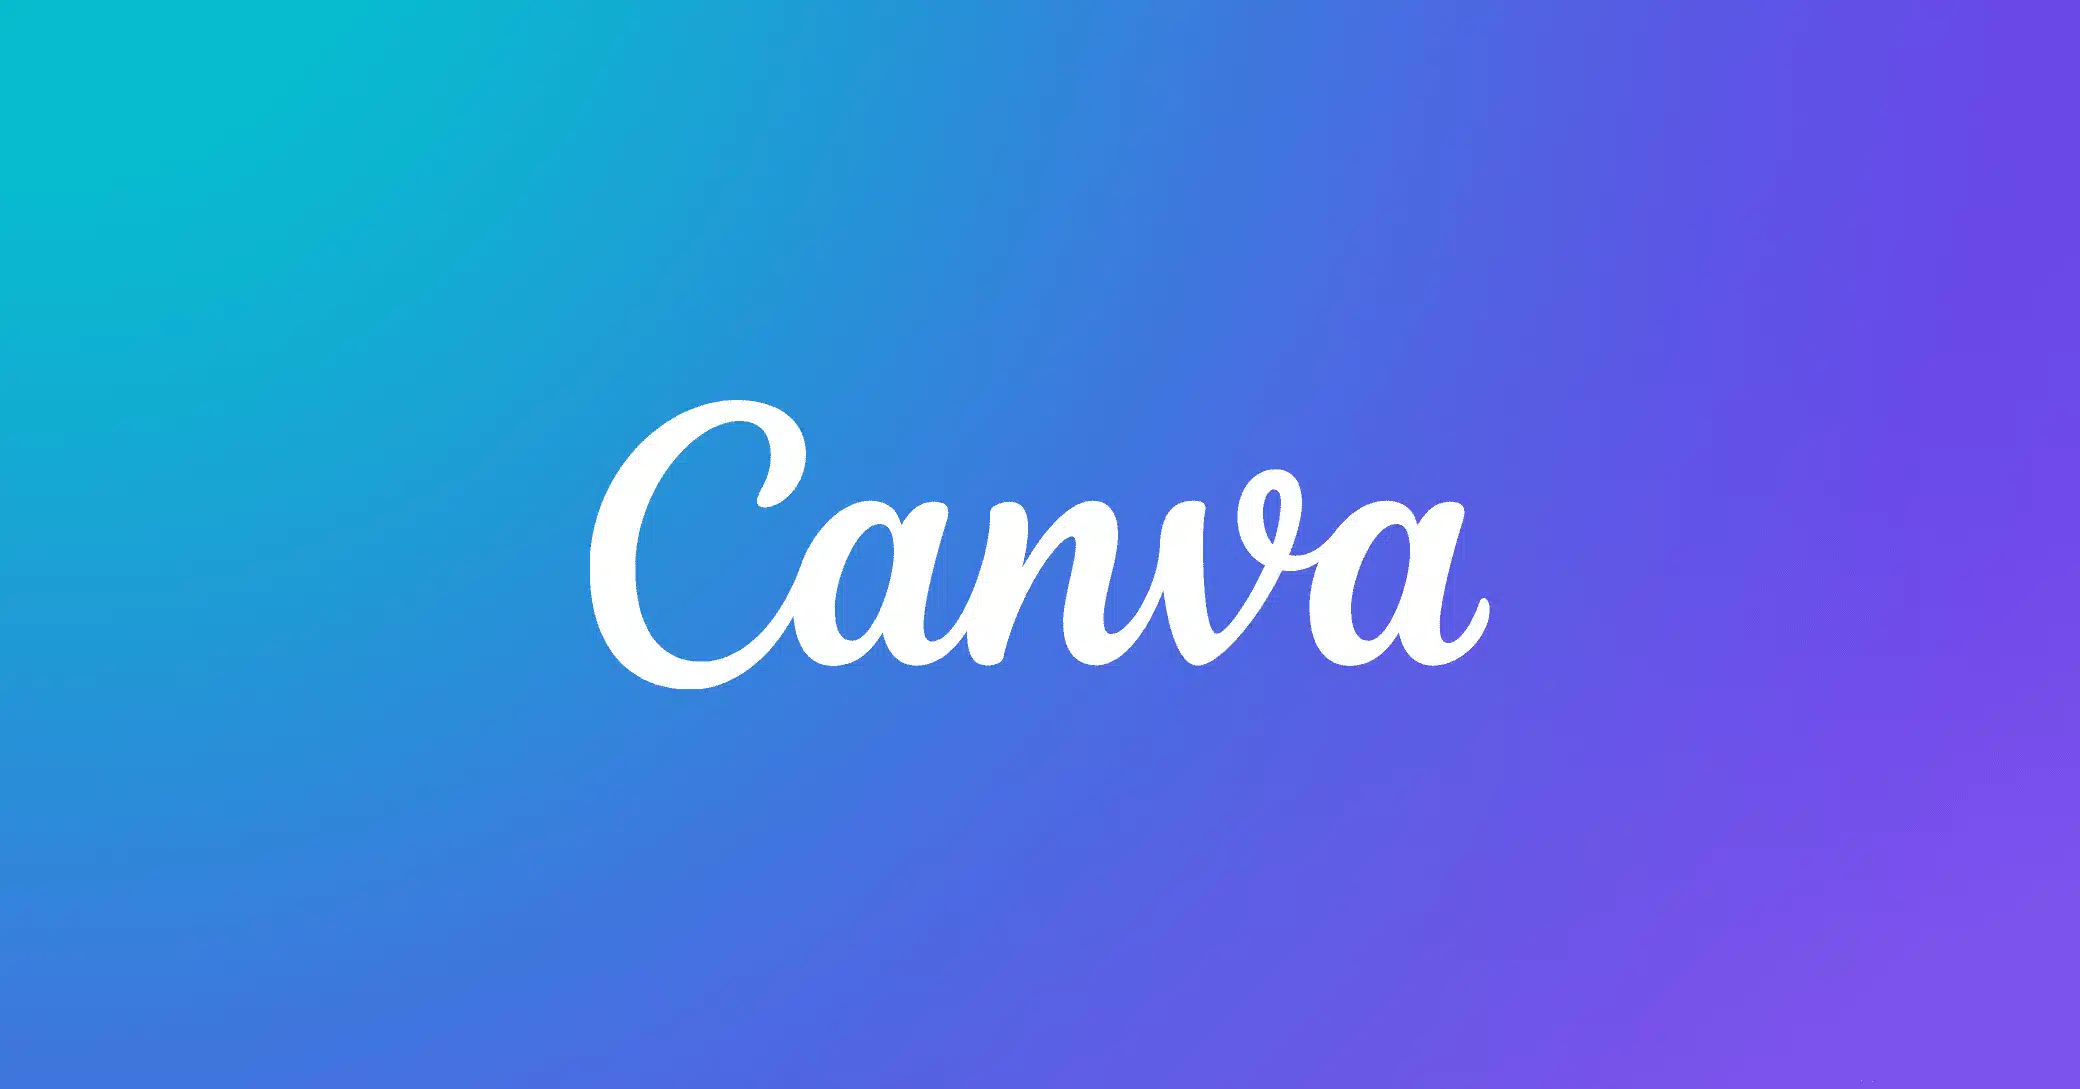 オンラインデザインツール「Canva」がChatGPTから利用可能に